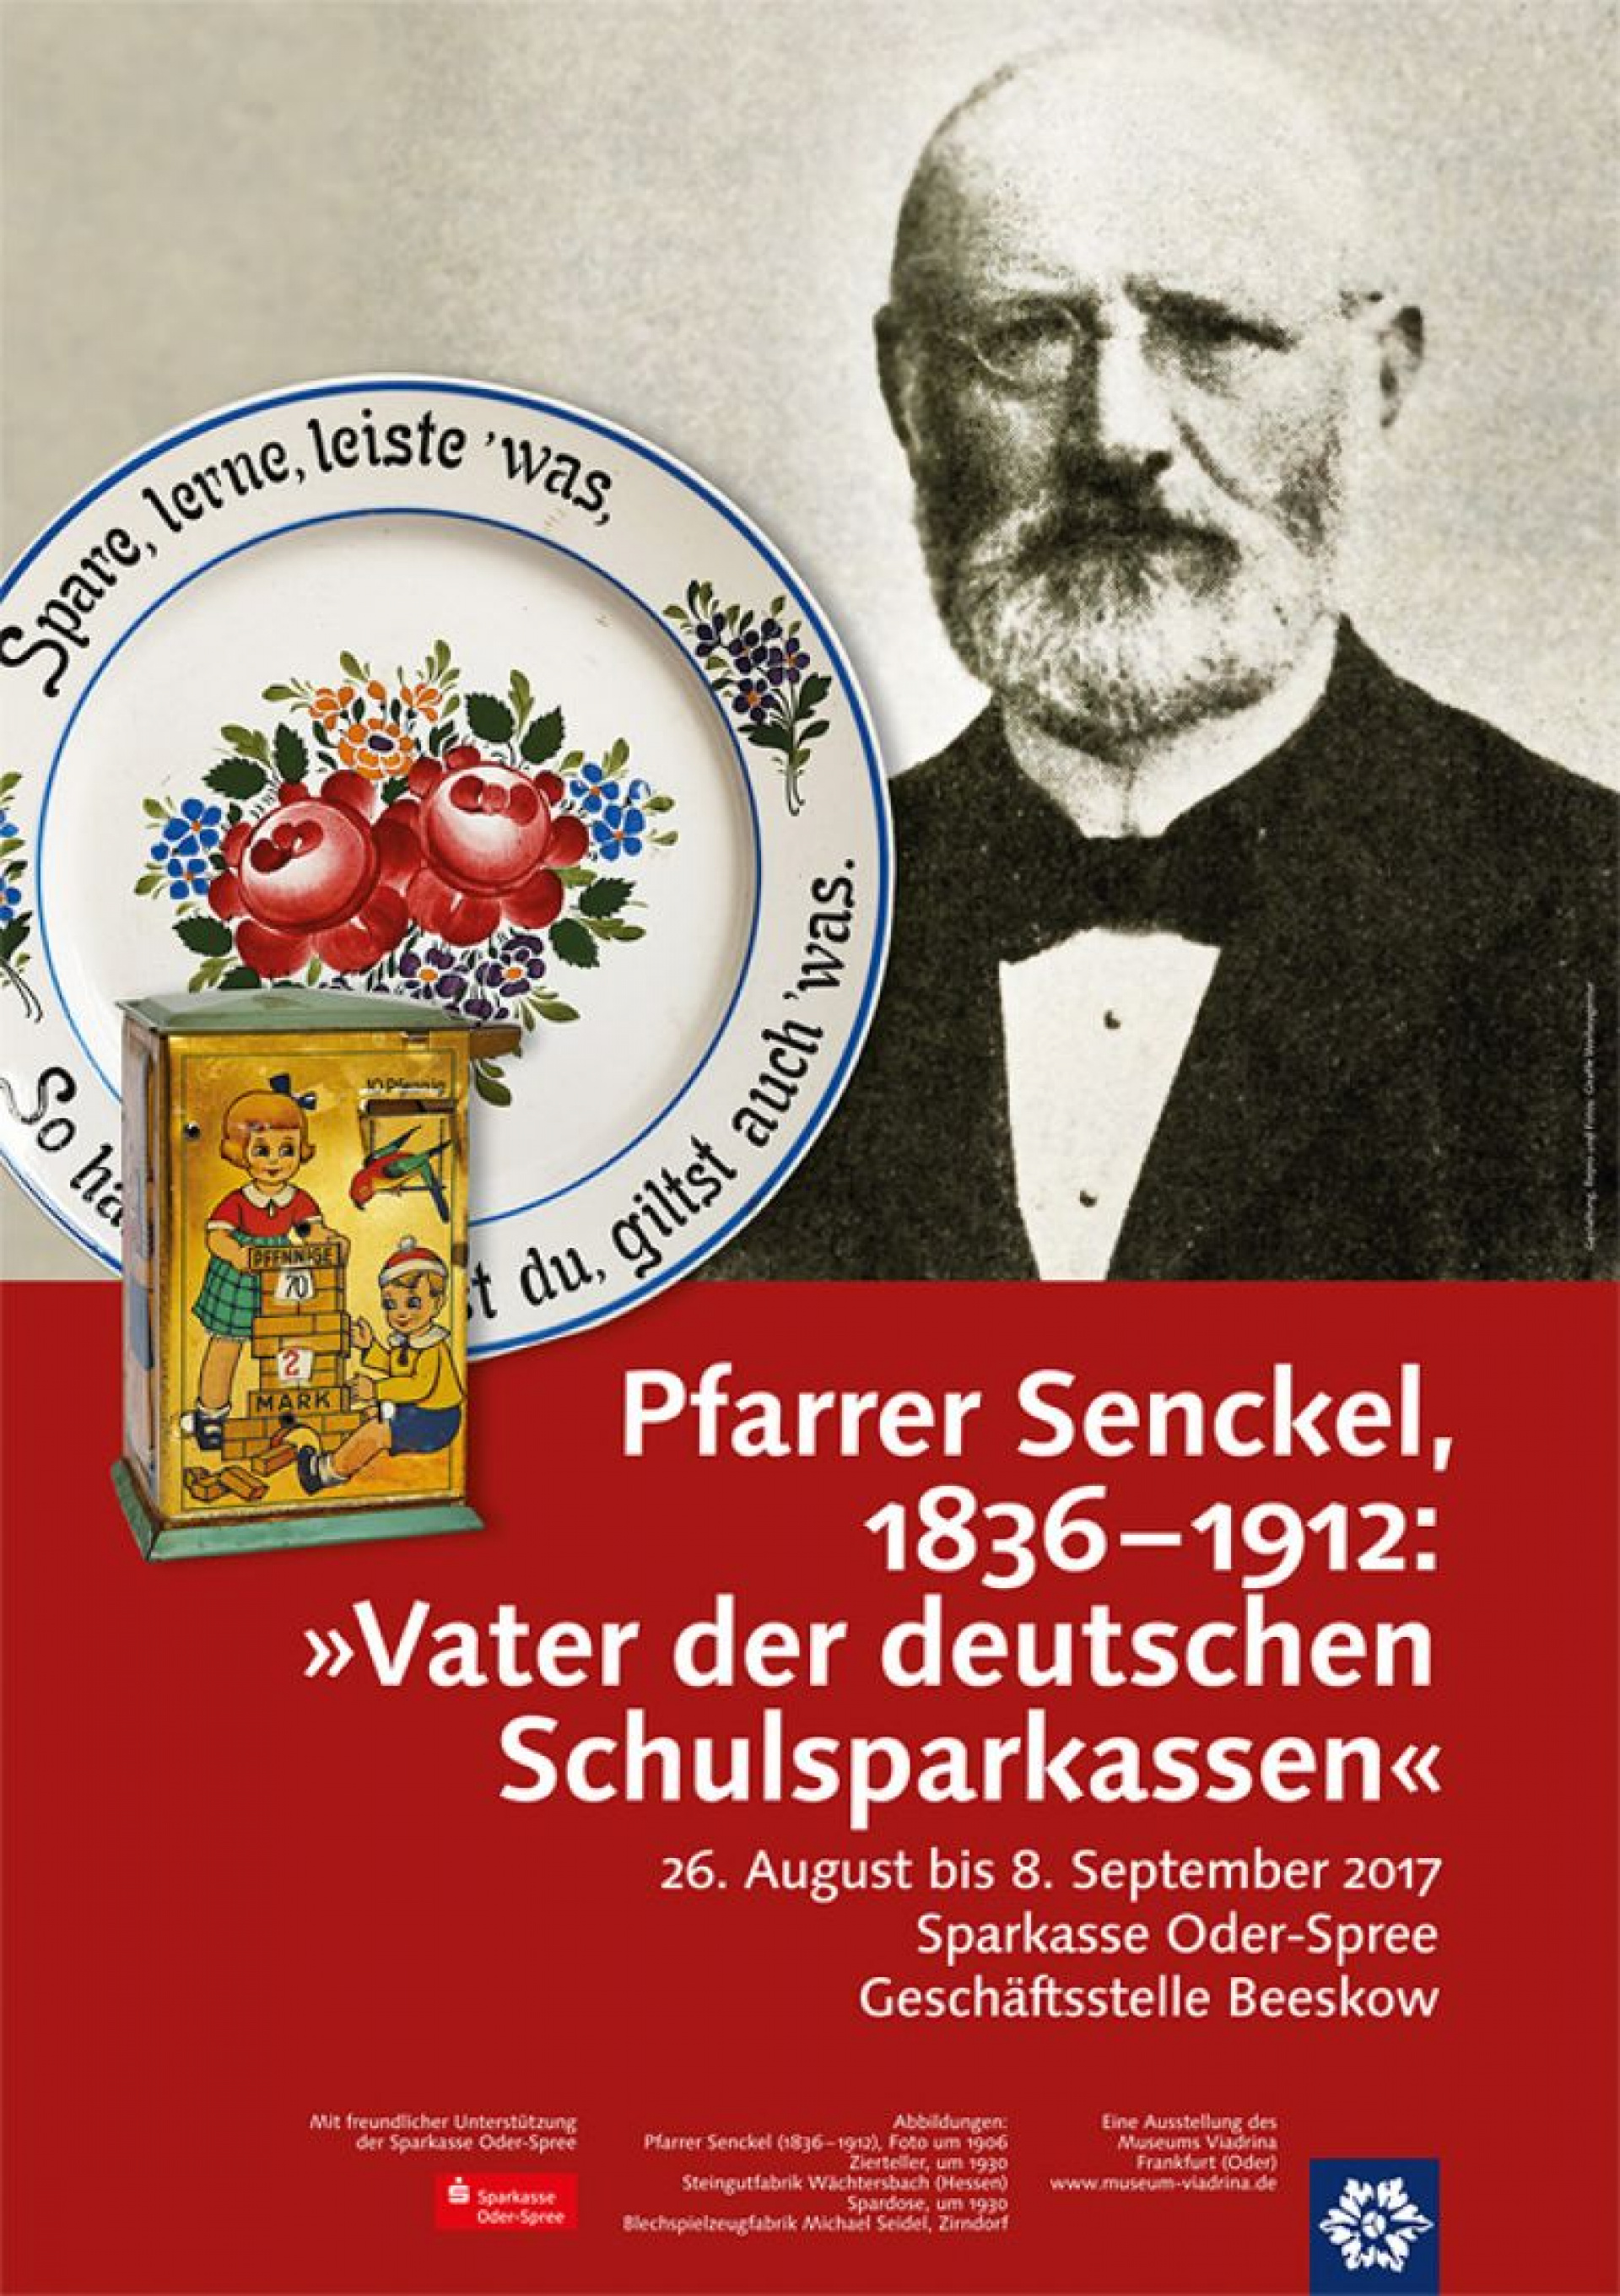 Pfarrer Senckel (1836 - 1912): „Vater der deutschen Schulsparkassen“